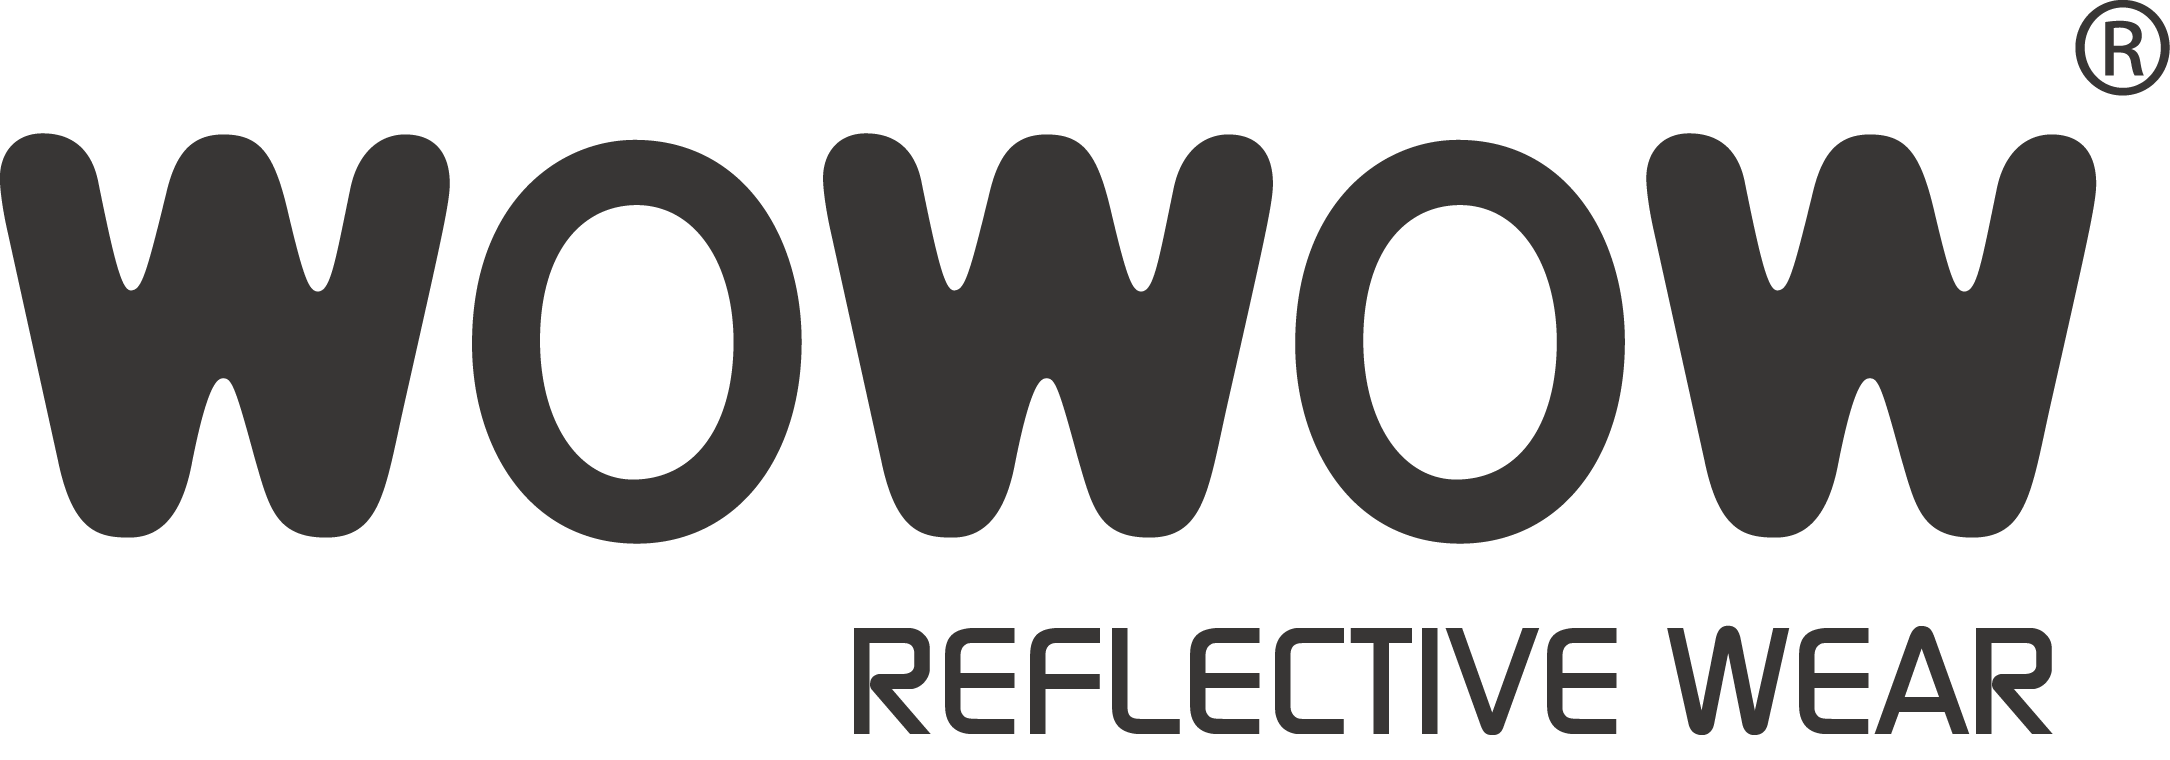 wowow europe logo